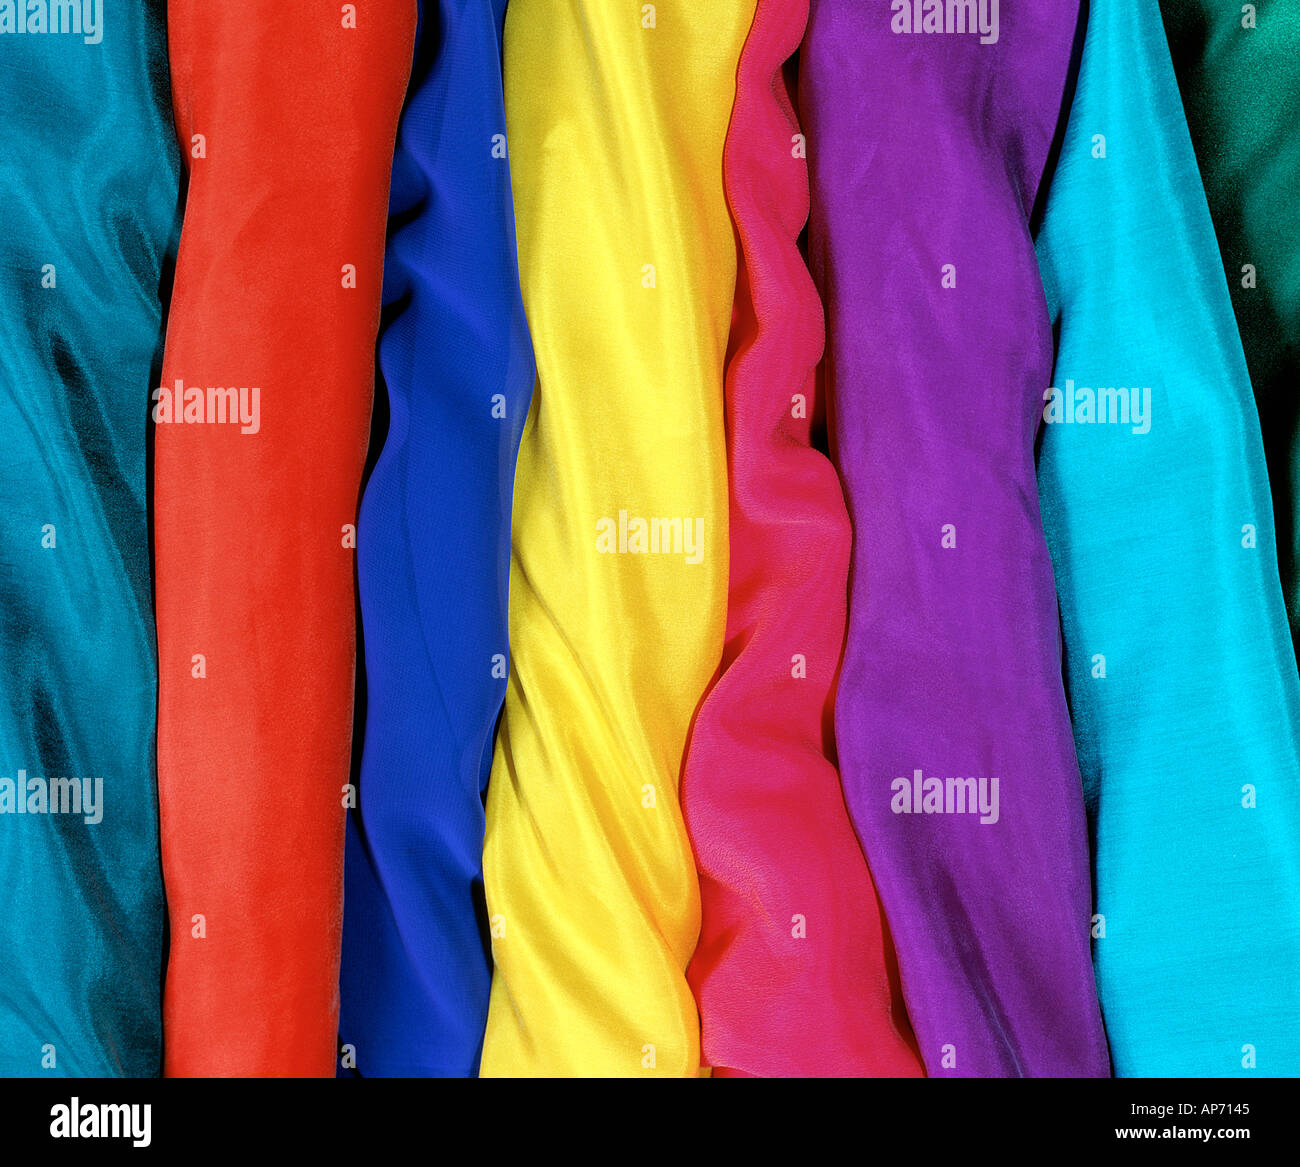 Tornillos de coloridas telas de seda Foto de stock